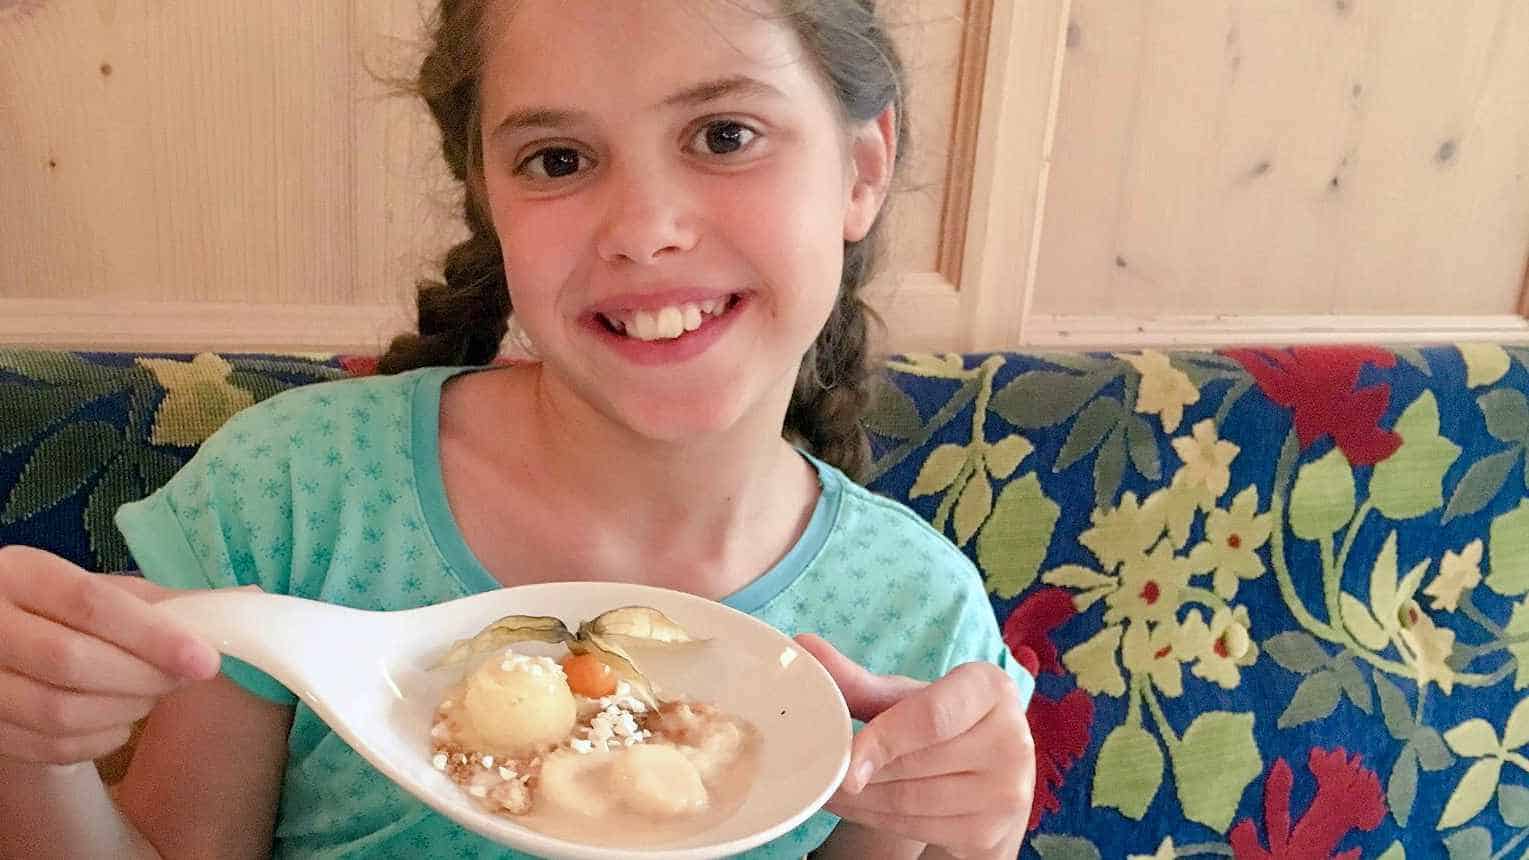 Een vrolijk jong meisje presenteert trots een lepel met een verleidelijk dessert in Hotel Ischglerhof, Ischgl. De lepel bevat een bolletje ijs en wat vruchten, een zoete afsluiter na een dag vol avontuur in de Oostenrijkse Alpen.